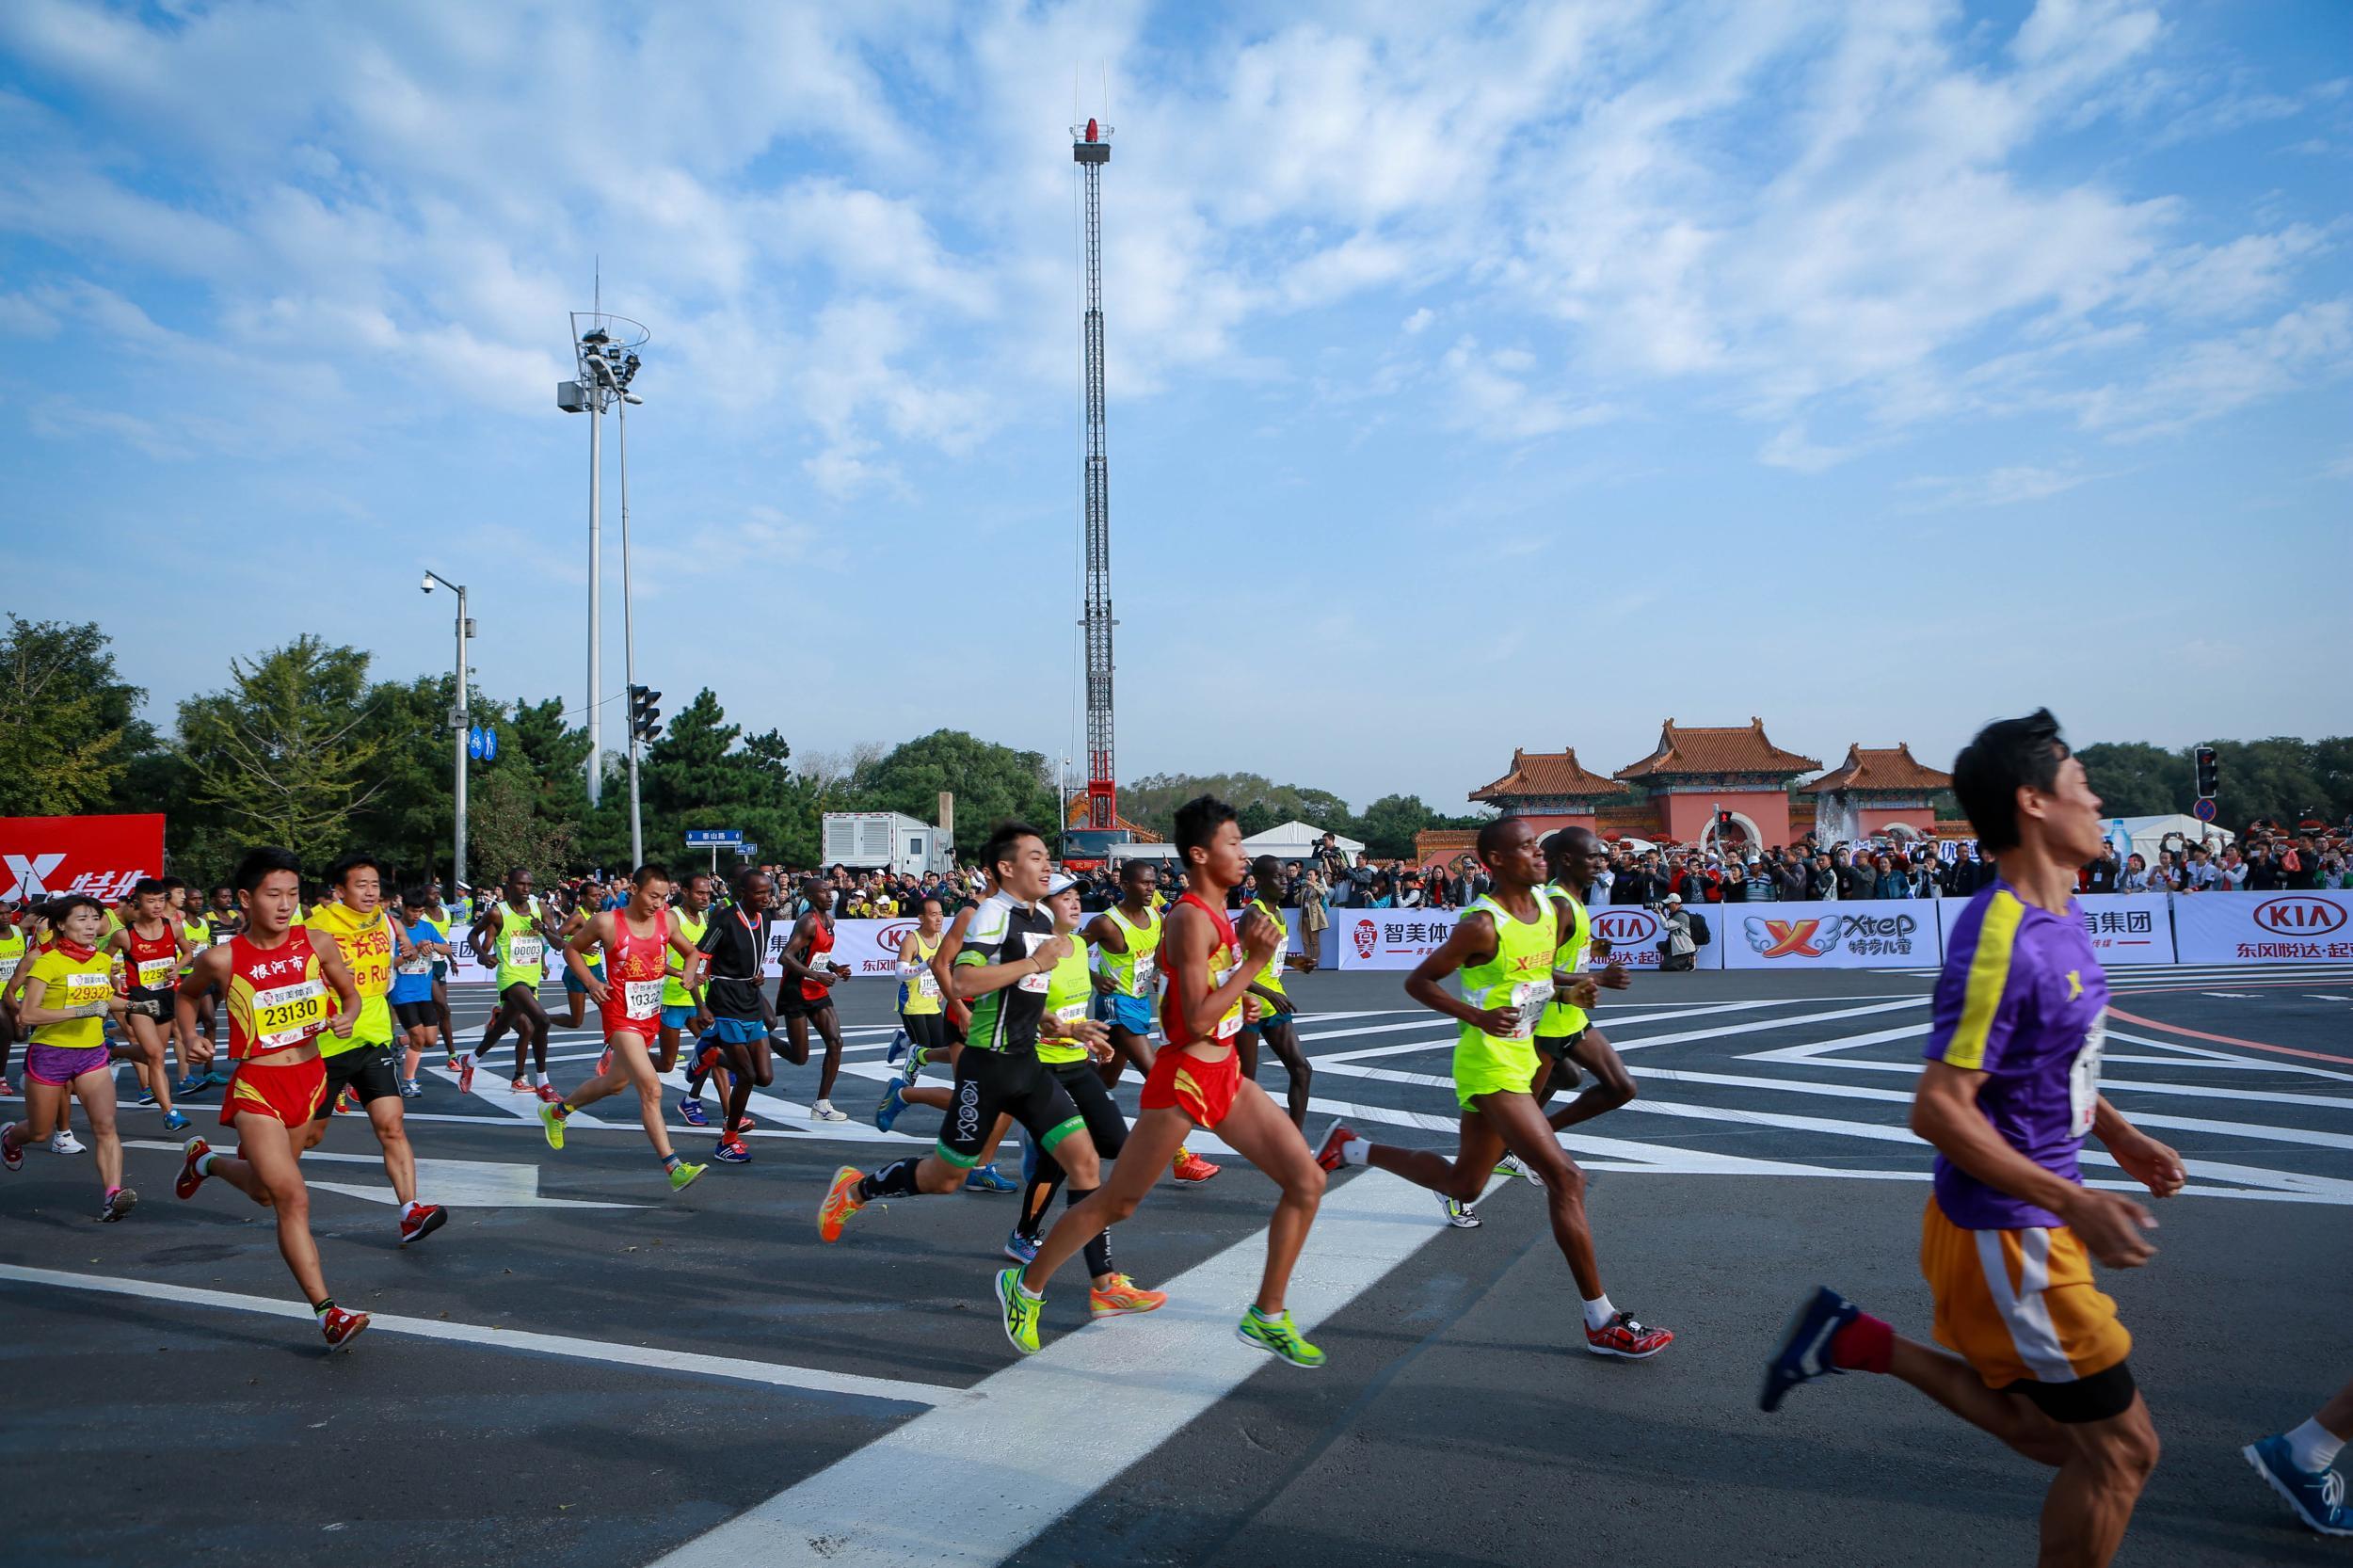 马拉松跑全程一般人跑多久 马拉松跑全程是多少米?